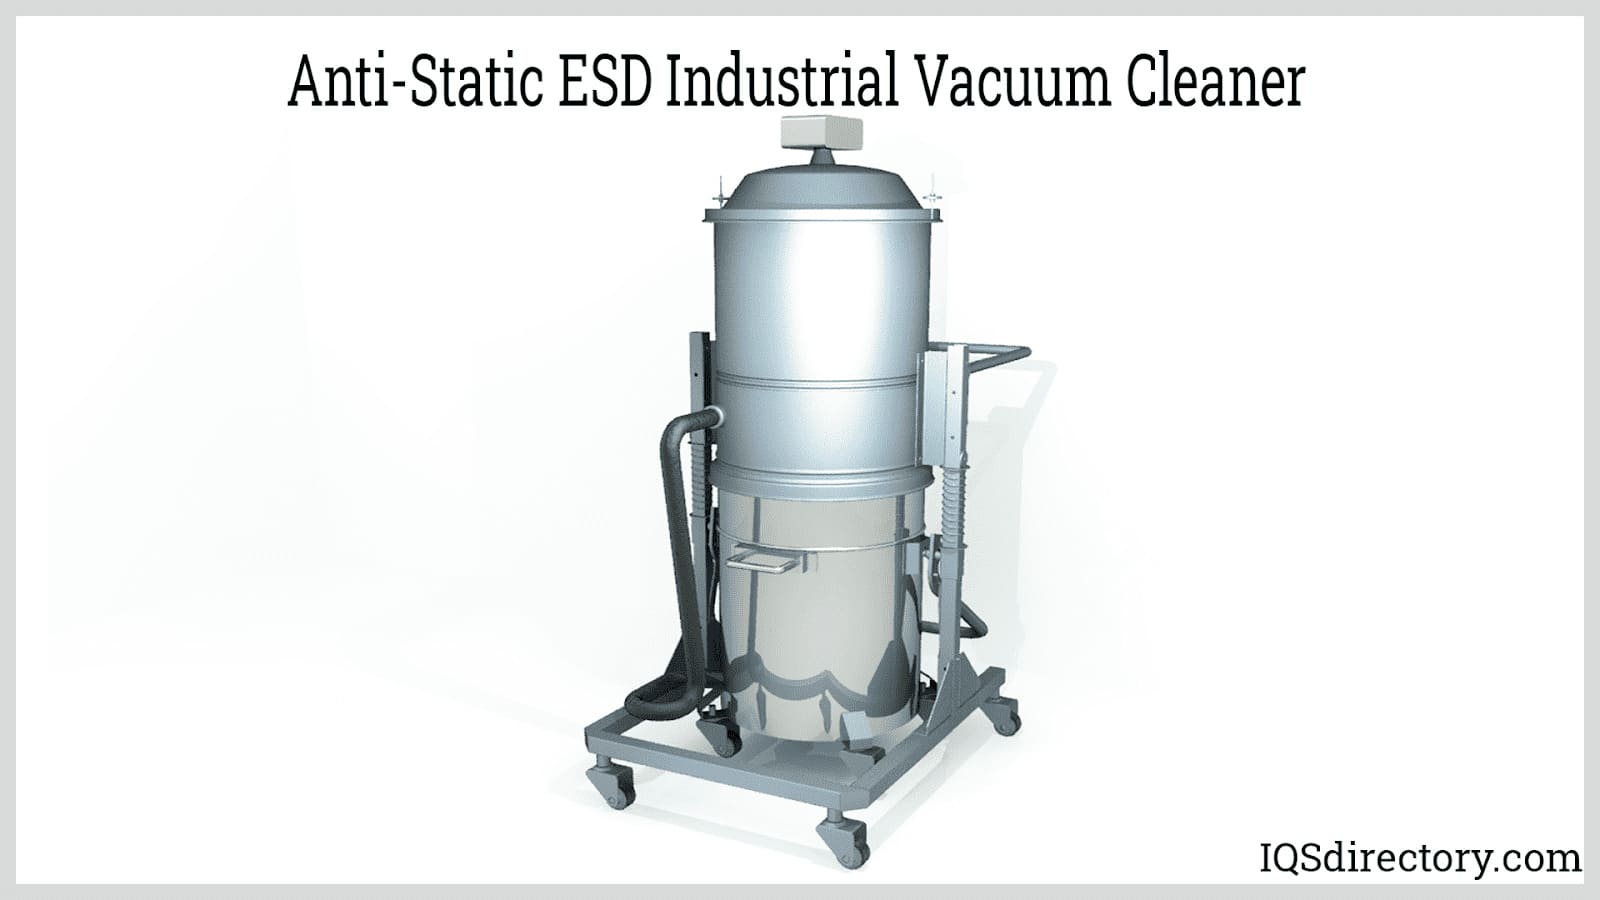 Anti-Static ESD Industrial Vacuum Cleaner